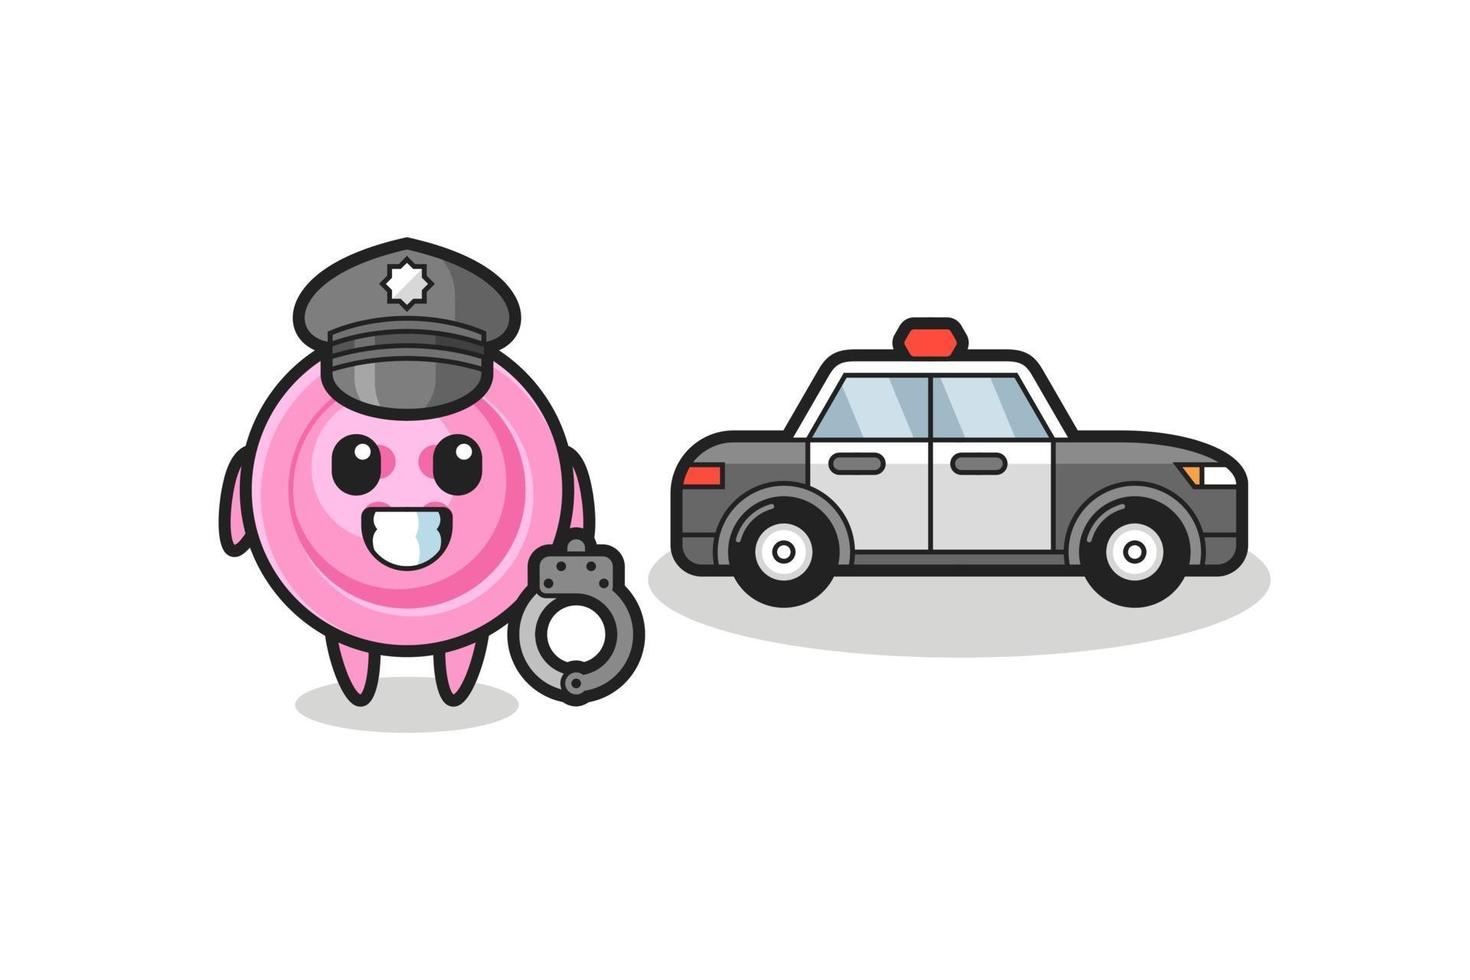 Cartoon mascot of clothing button as a police vector